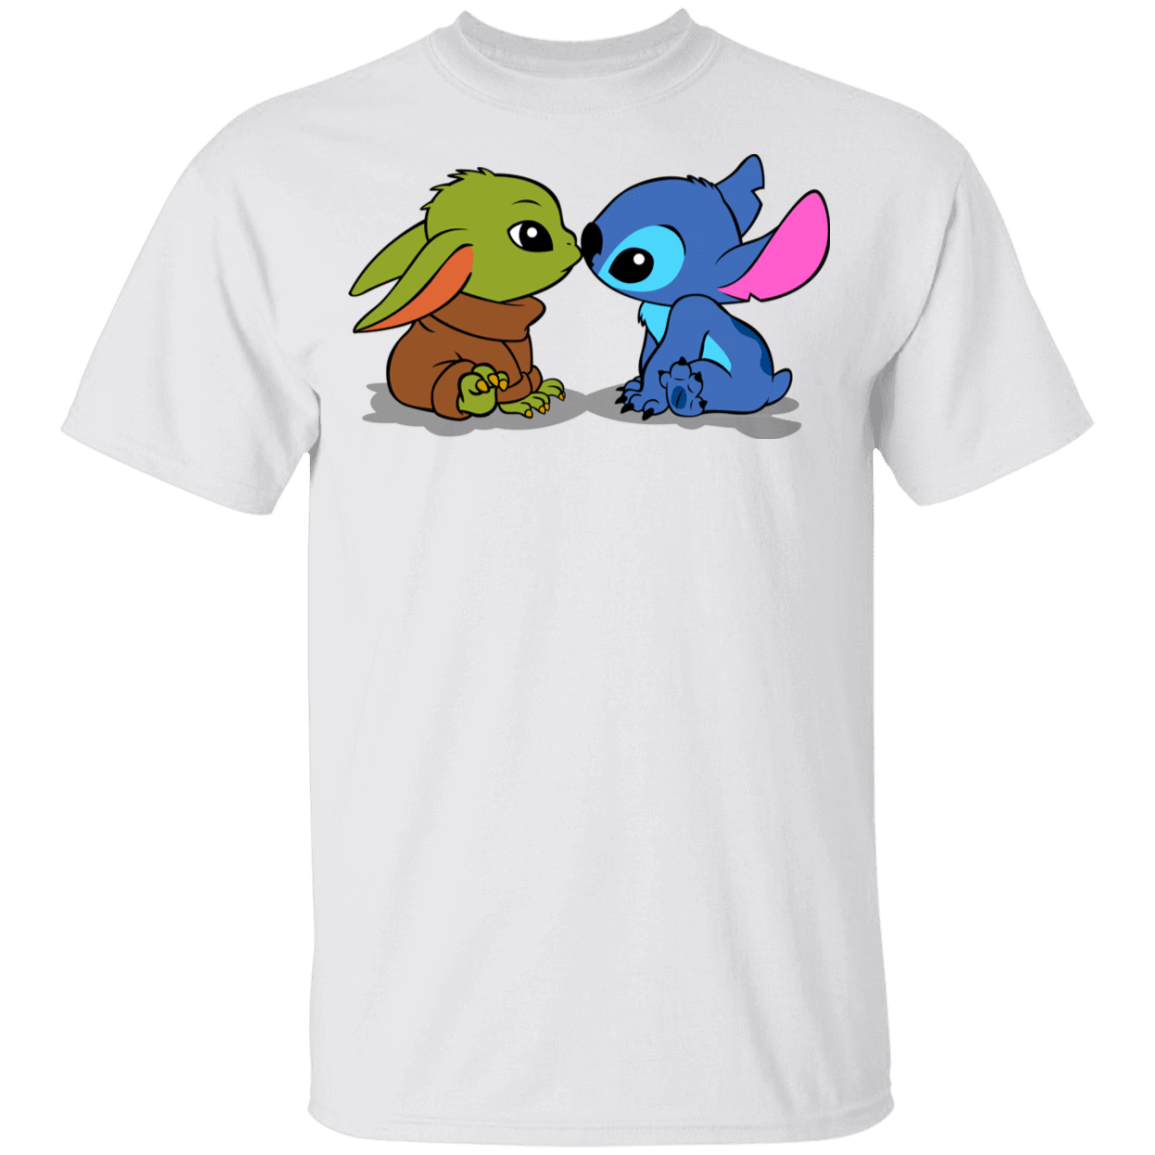 T-Shirts White / YXS Stitch Yoda Baby Youth T-Shirt